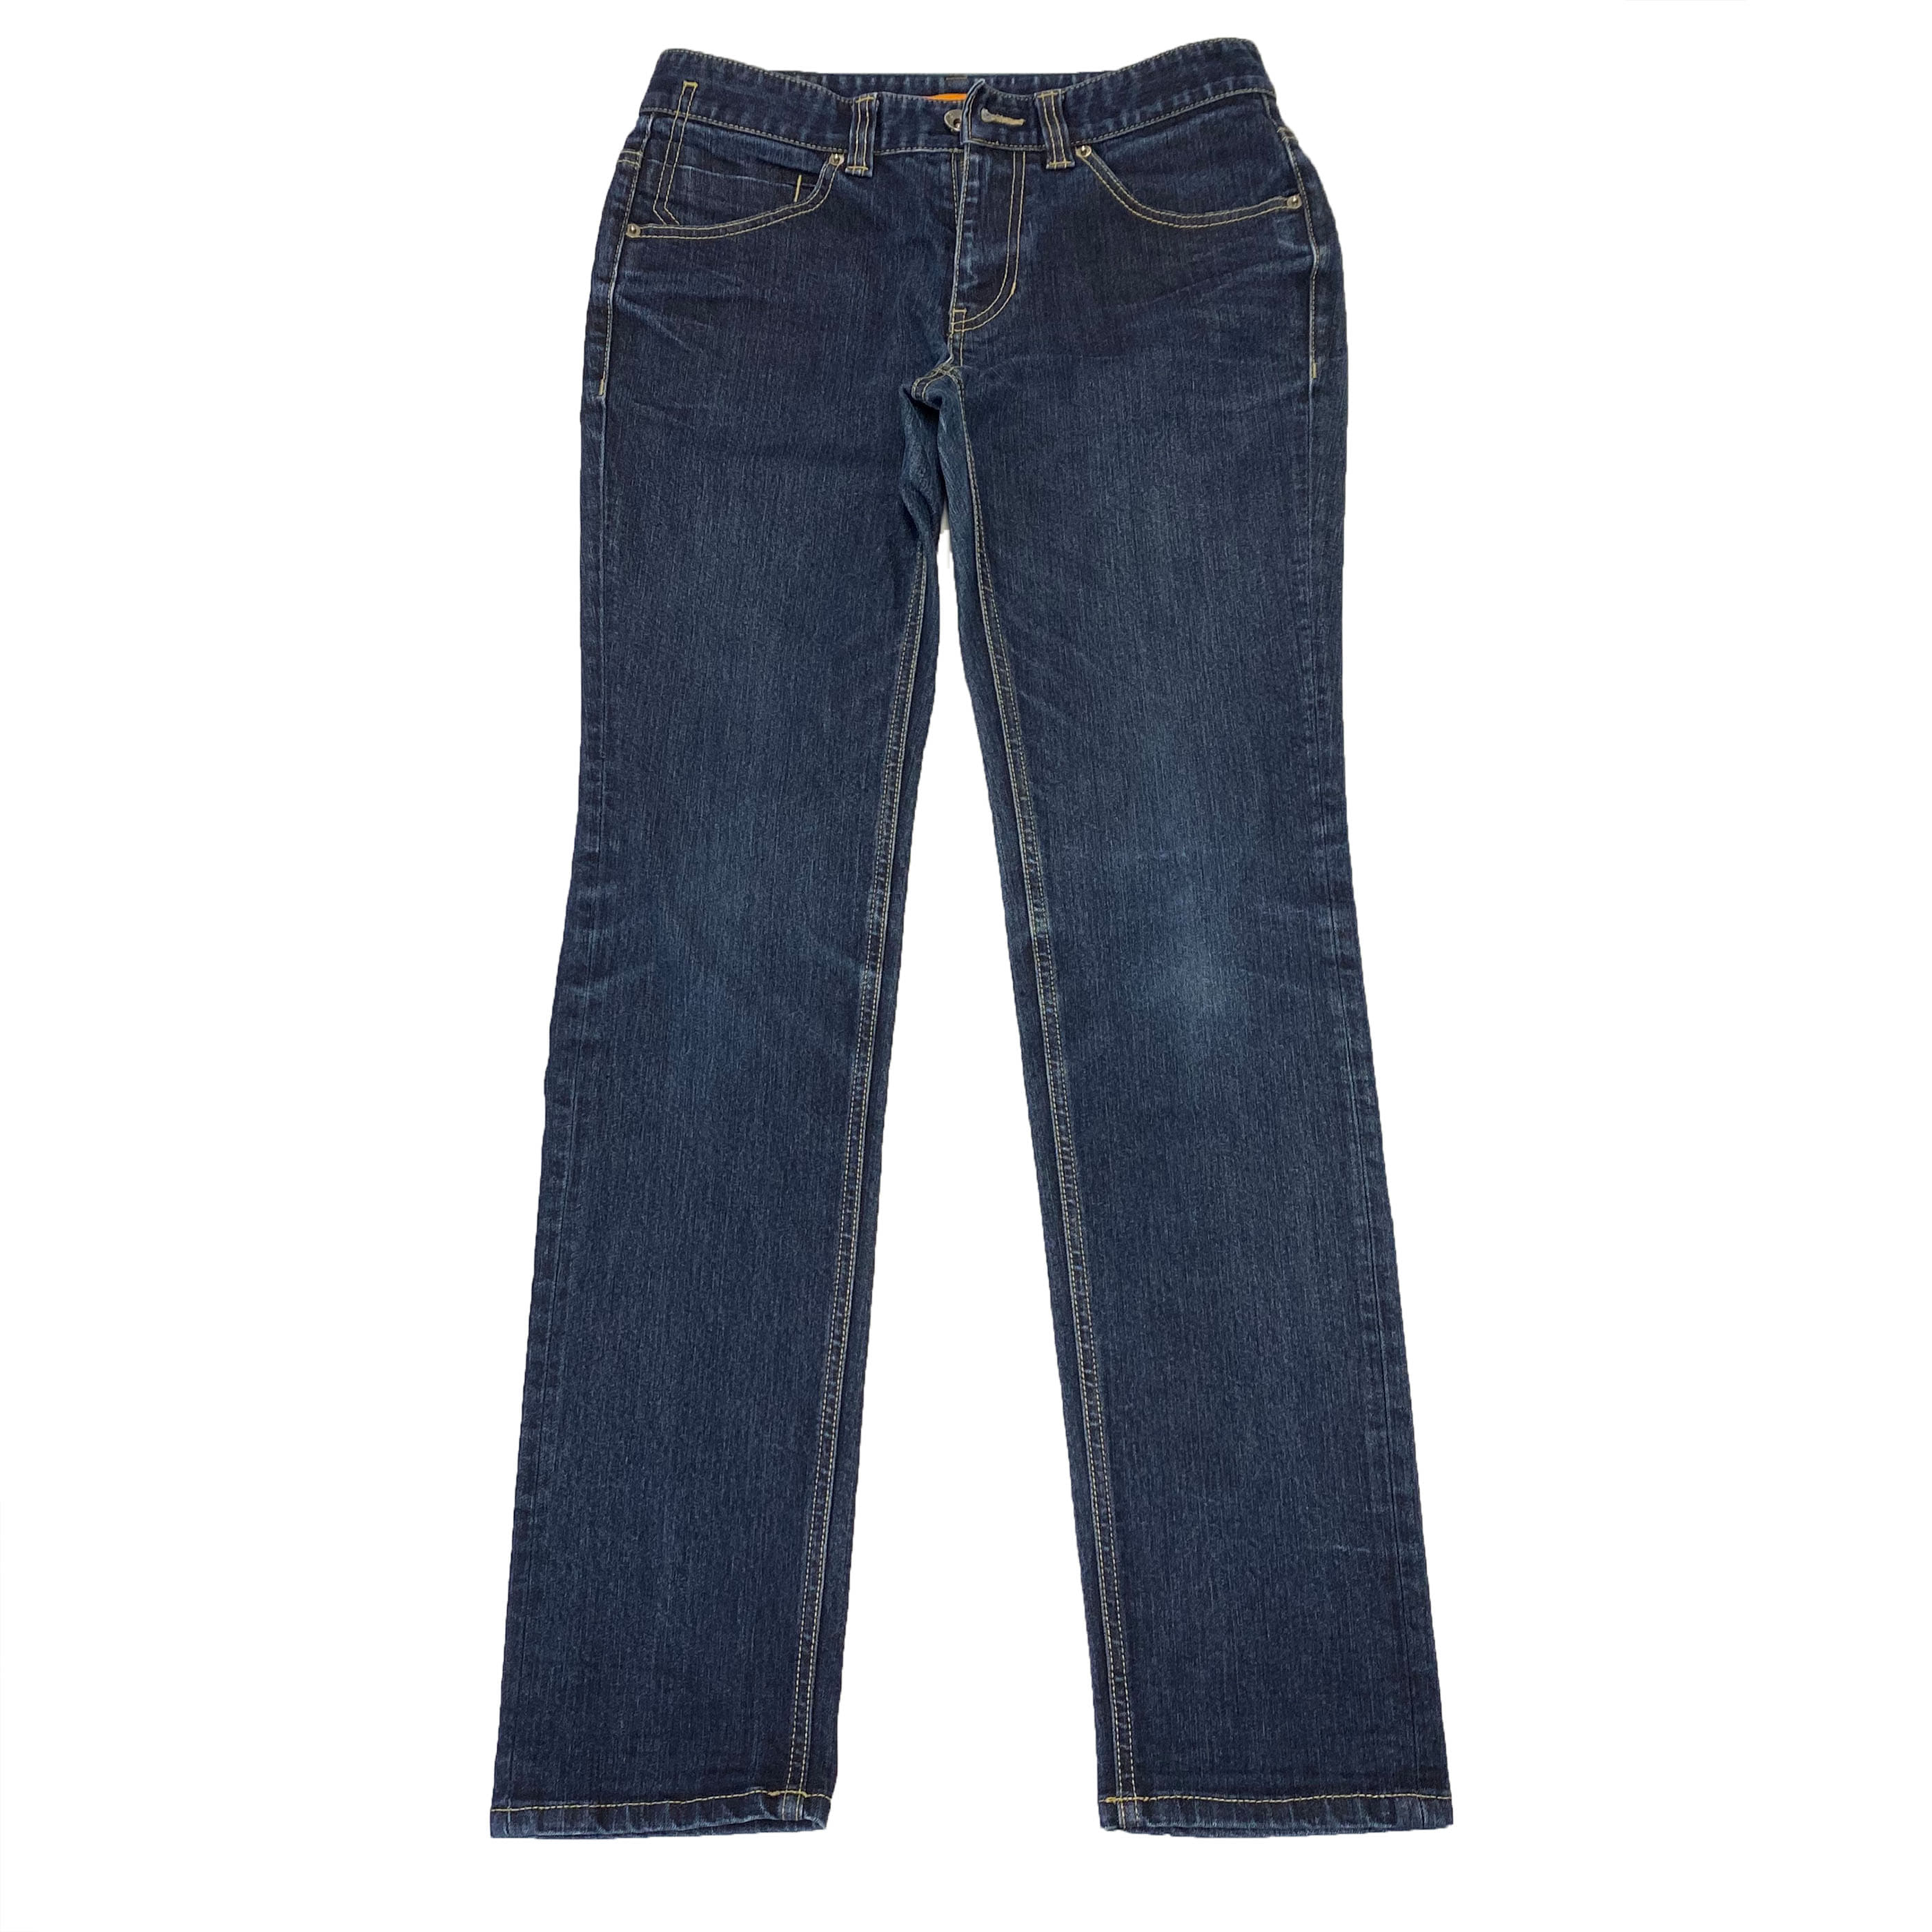 [Tomboy] Skinny Jeans - size 30